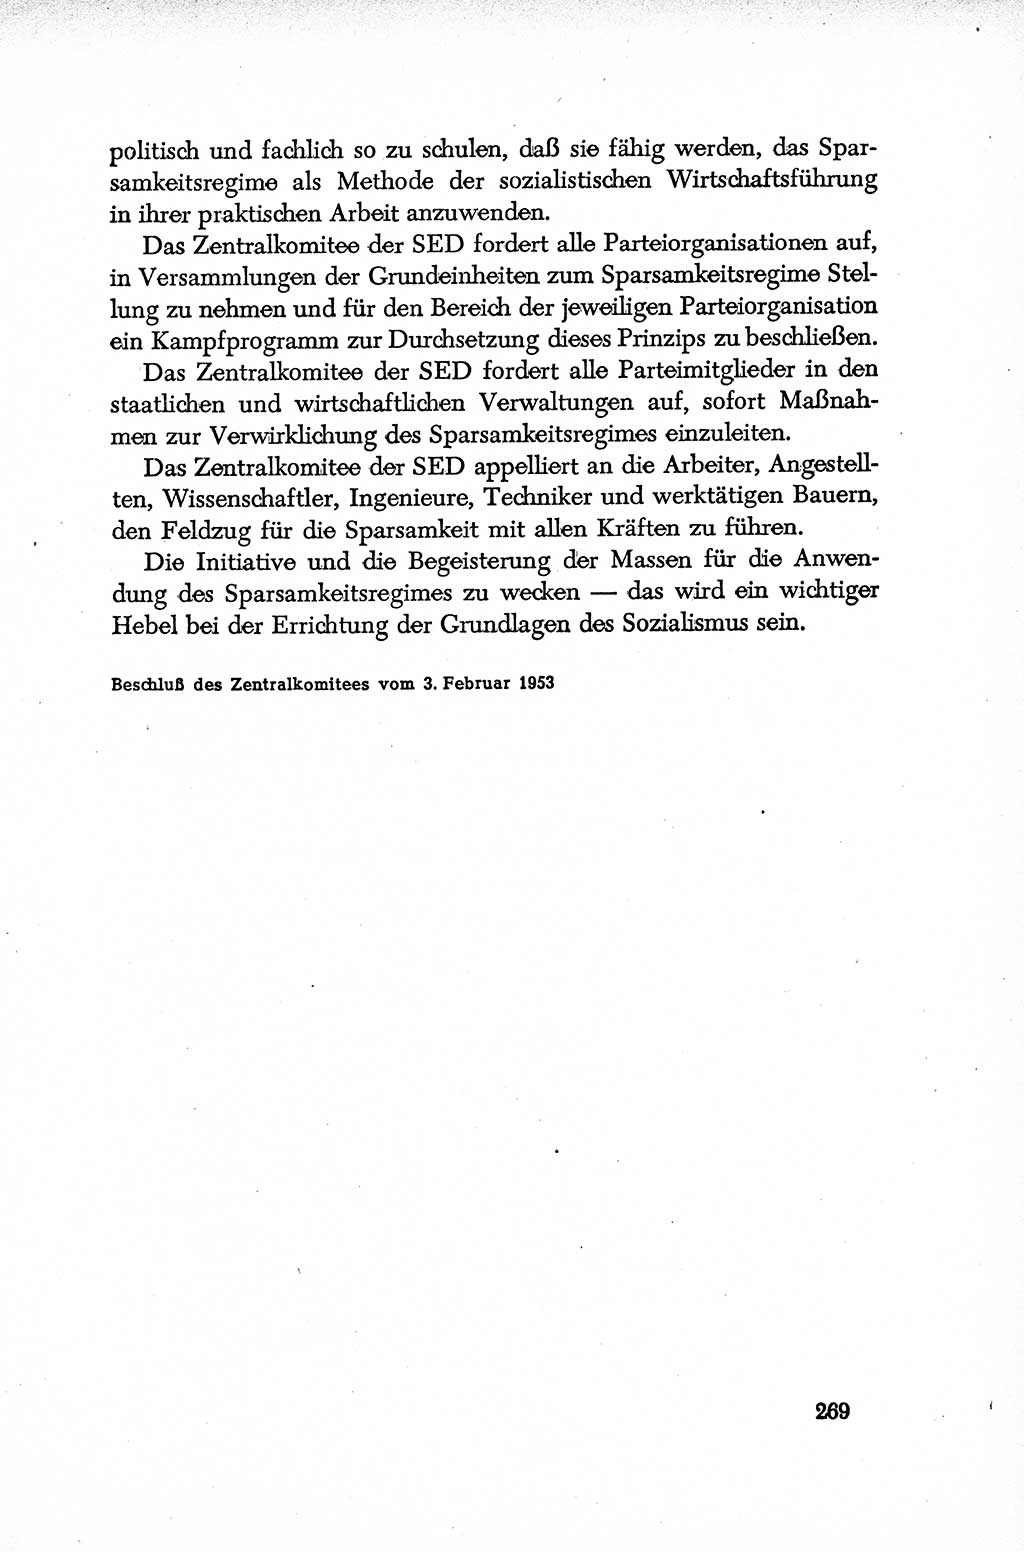 Dokumente der Sozialistischen Einheitspartei Deutschlands (SED) [Deutsche Demokratische Republik (DDR)] 1952-1953, Seite 269 (Dok. SED DDR 1952-1953, S. 269)